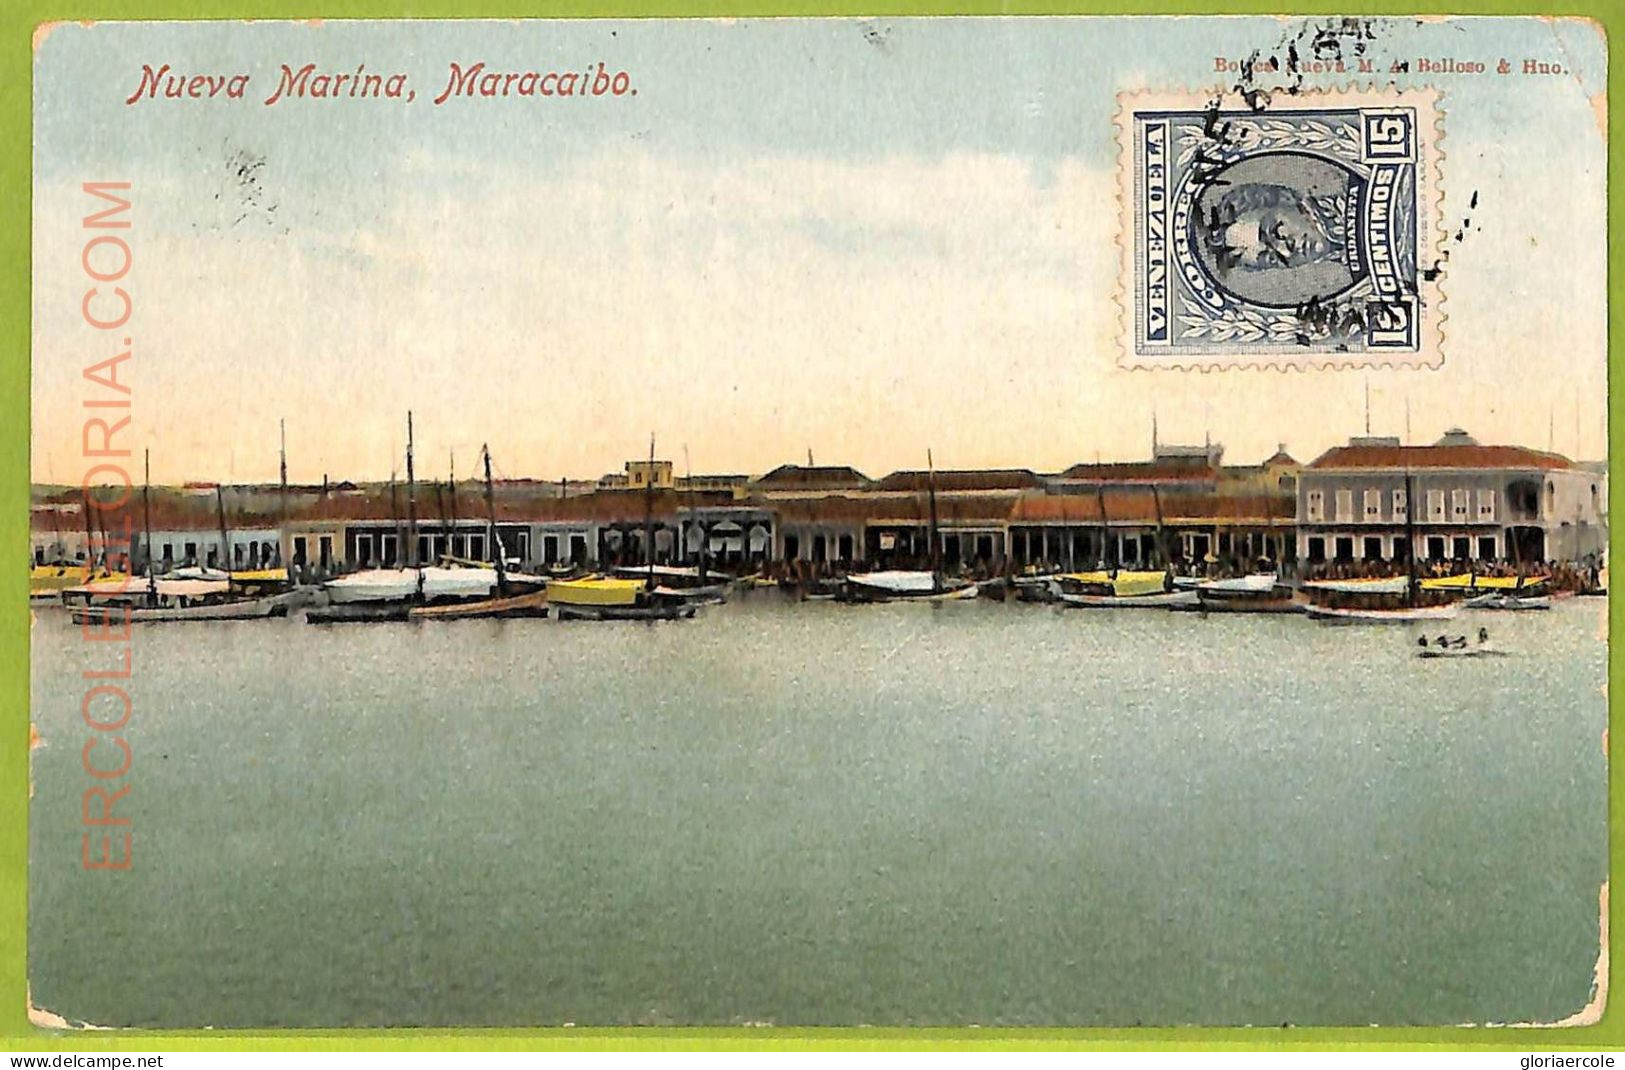 Af2985 - VENEZUELA - VINTAGE POSTCARD - Maracaibo, Nueva Marina - 1912 - Venezuela